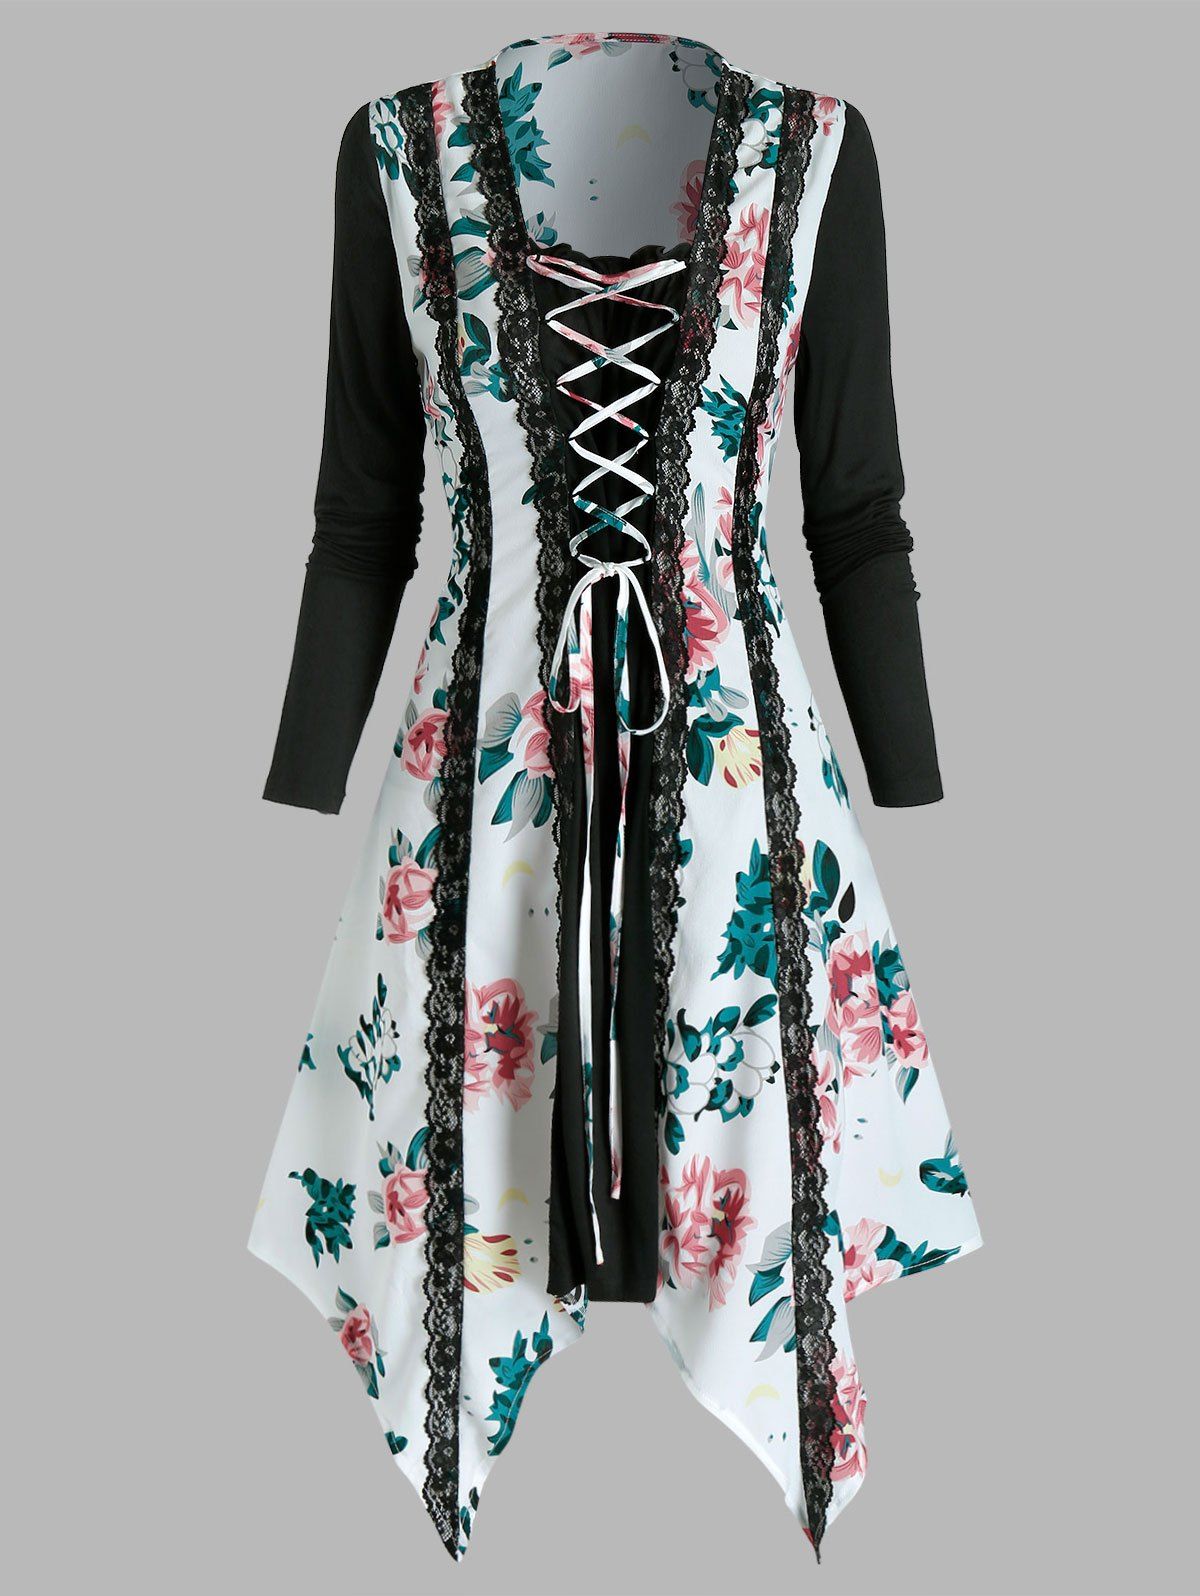 Floral Print Lace Up Lace Trim Long Sleeve Asymmetrical Dress - multicolor A XL